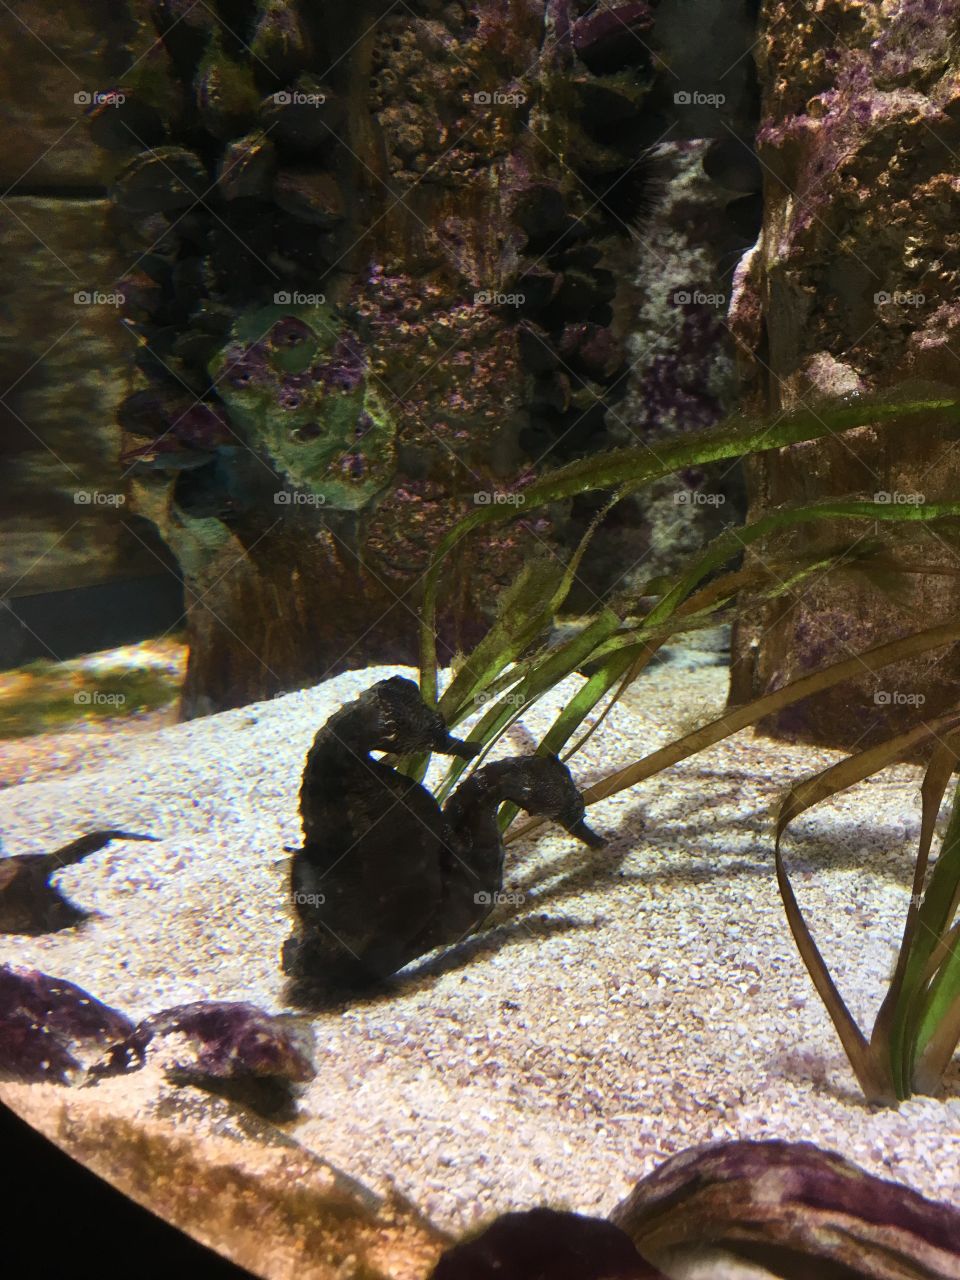 Seahorses at the Boston Aquarium!